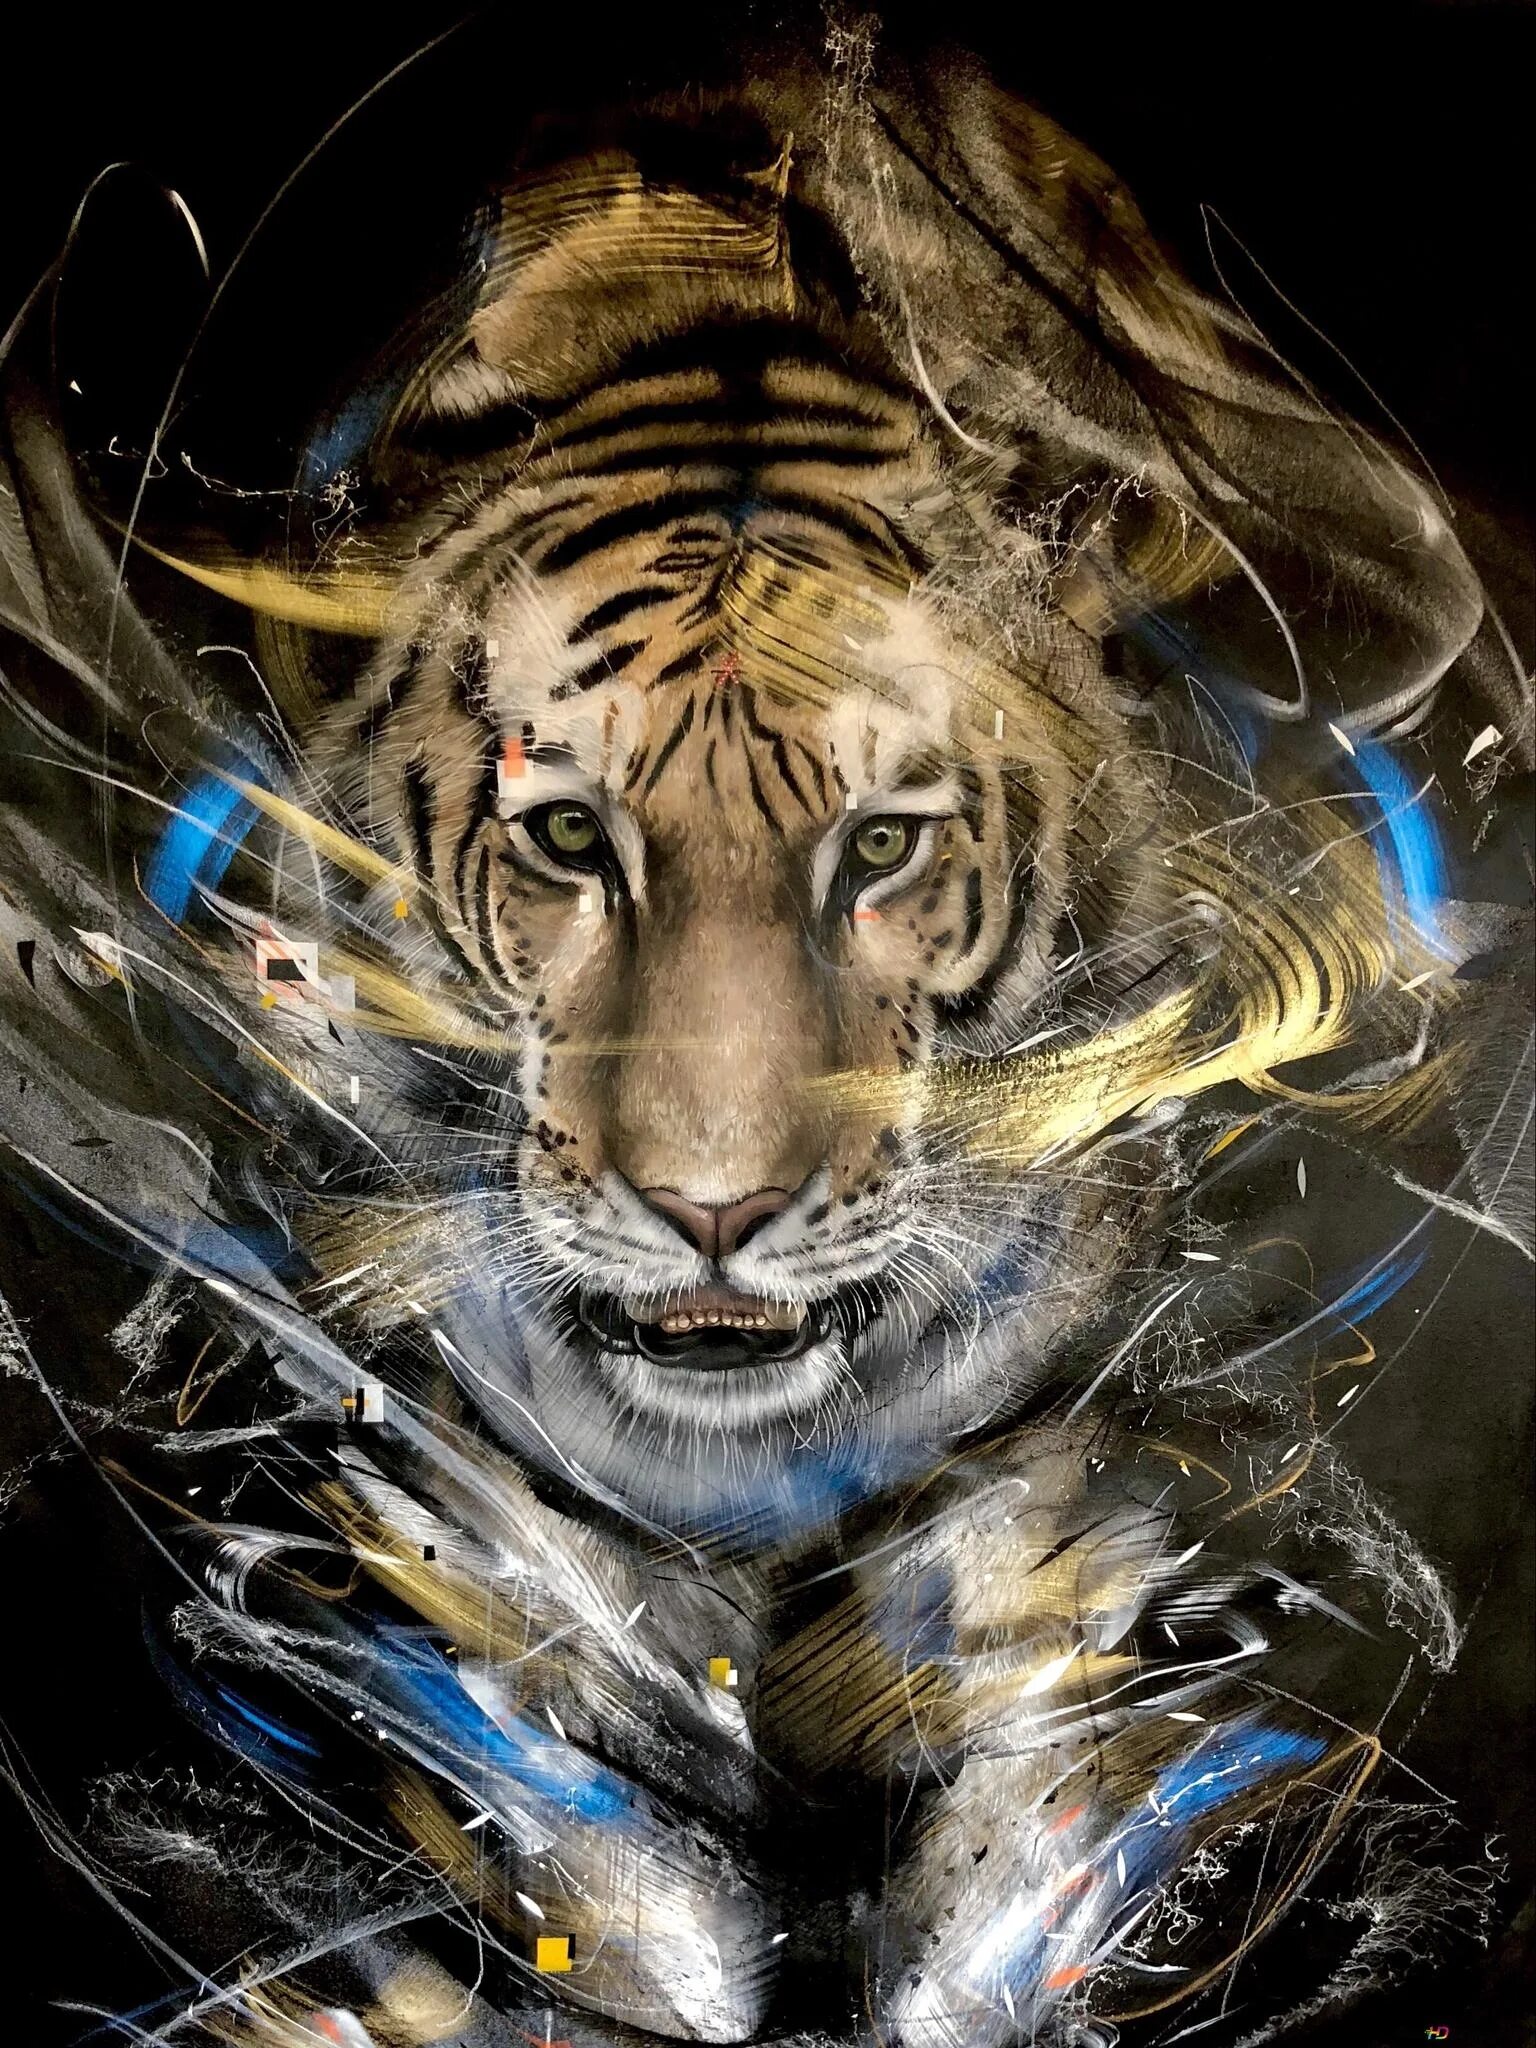 Заставки на телефон тиграми бесплатные. Тигр. Тигр арт. Тигр картинки. Тигр на заставку.